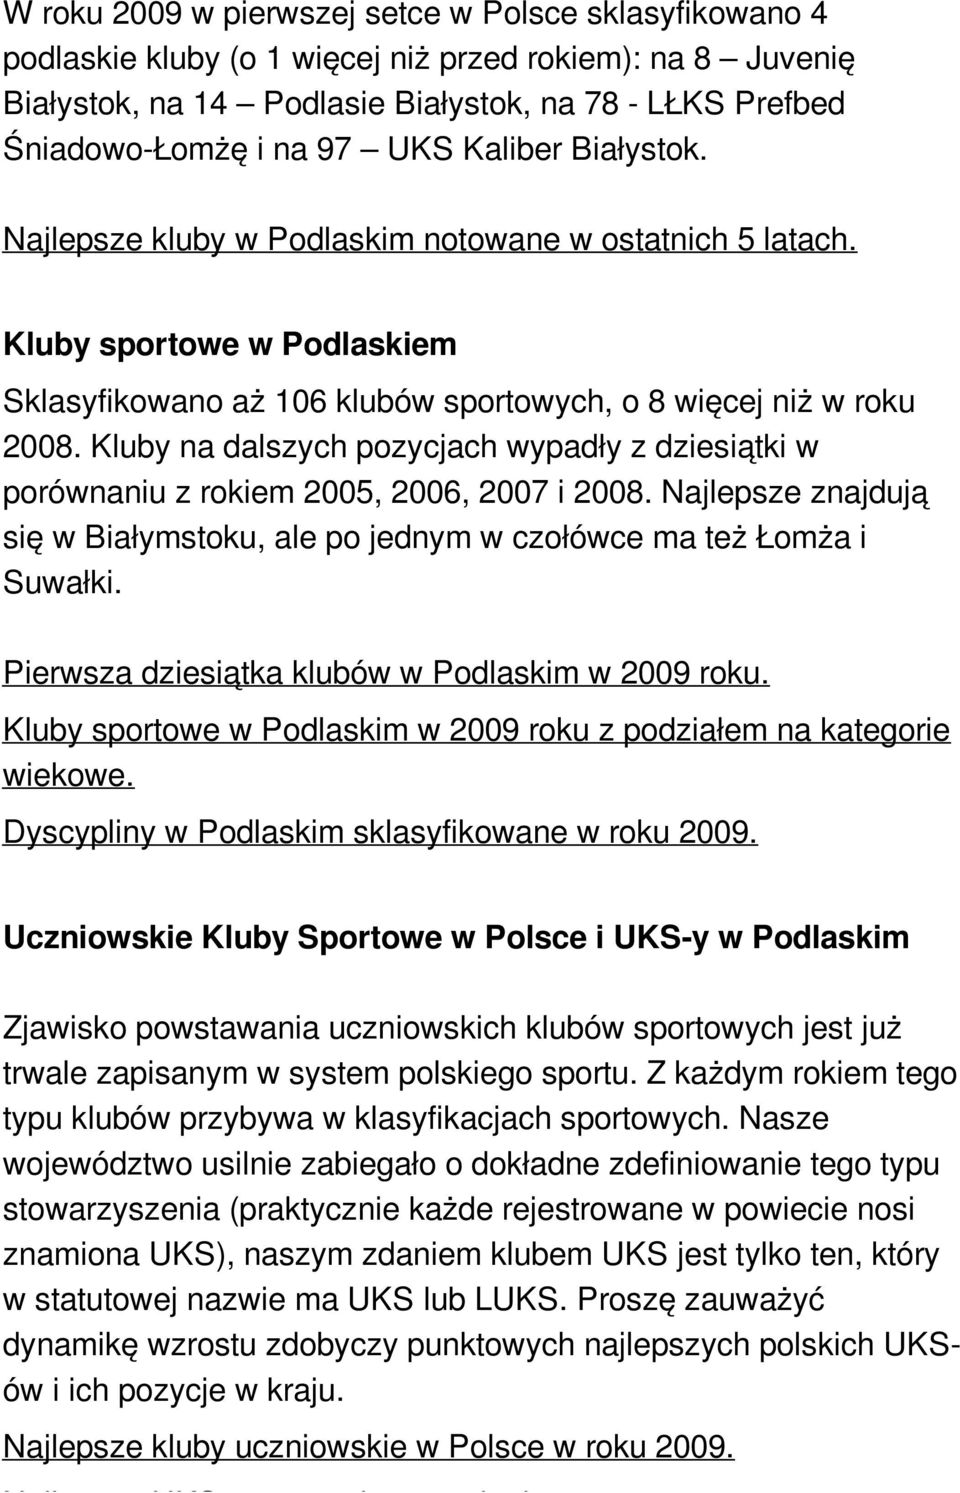 Kluby na dalszych pozycjach wypadły z dziesiątki w porównaniu z rokiem 2005, 2006, 2007 i 2008. Najlepsze znajdują się w Białymstoku, ale po jednym w czołówce ma też Łomża i Suwałki.